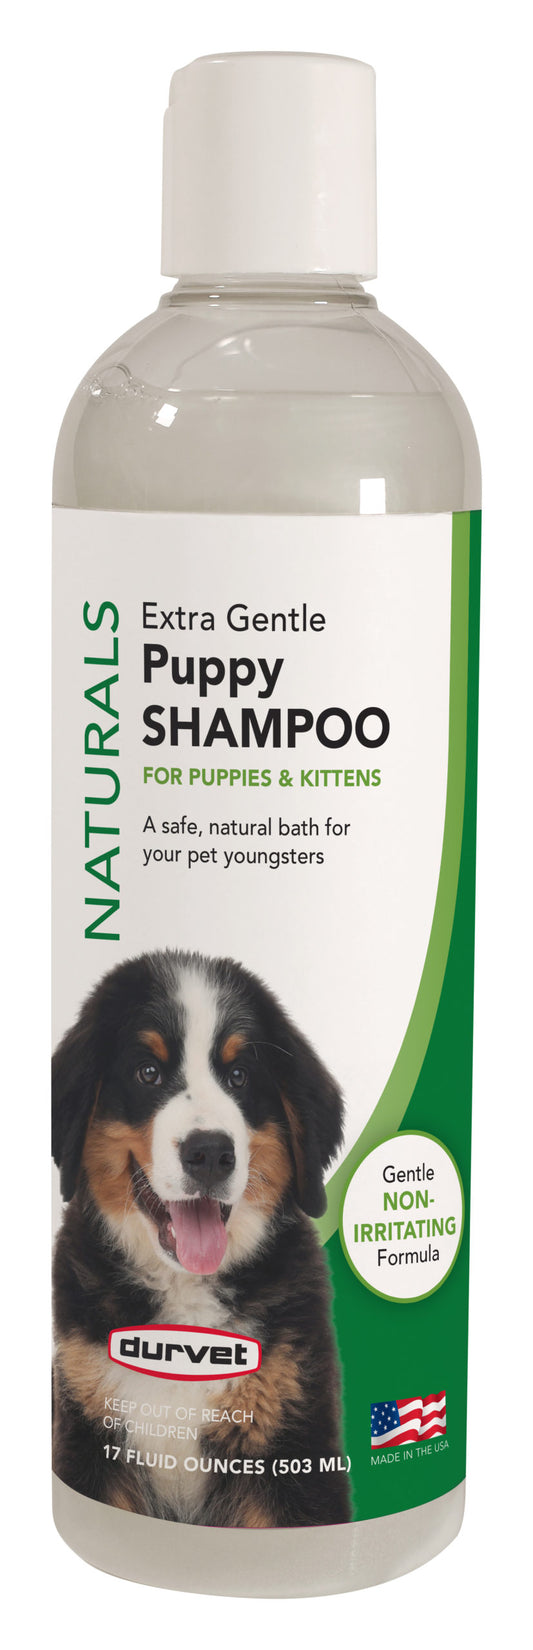 17oz Durvet Naturals Extra Gentle Puppy Shampoo